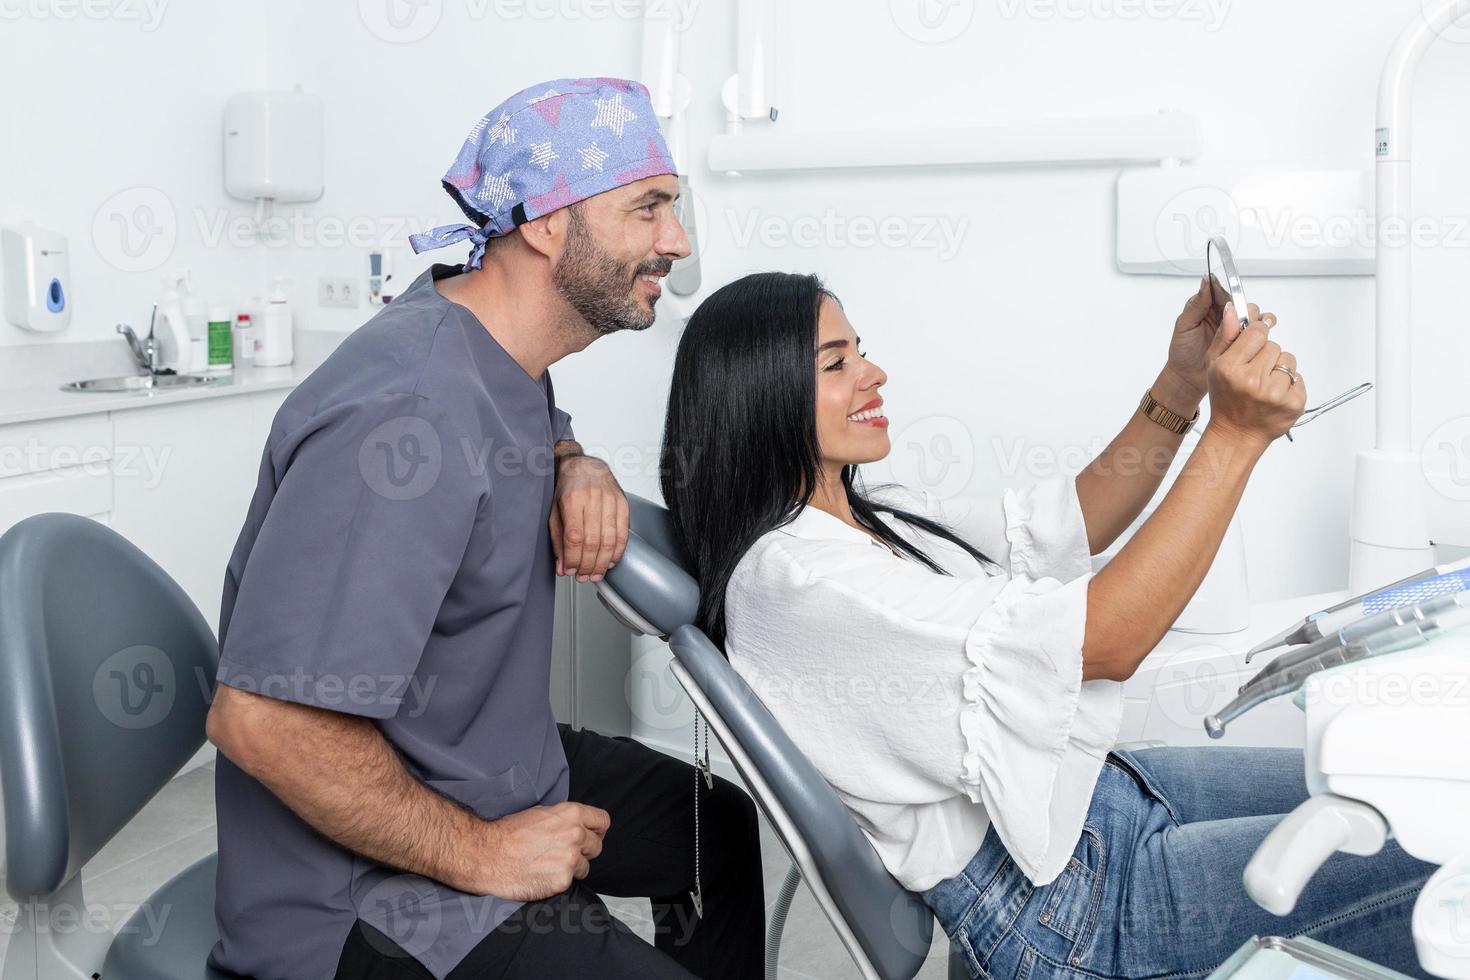 cliënt kijkt naar zijn tanden in de spiegel naast een tandarts in een kliniek foto